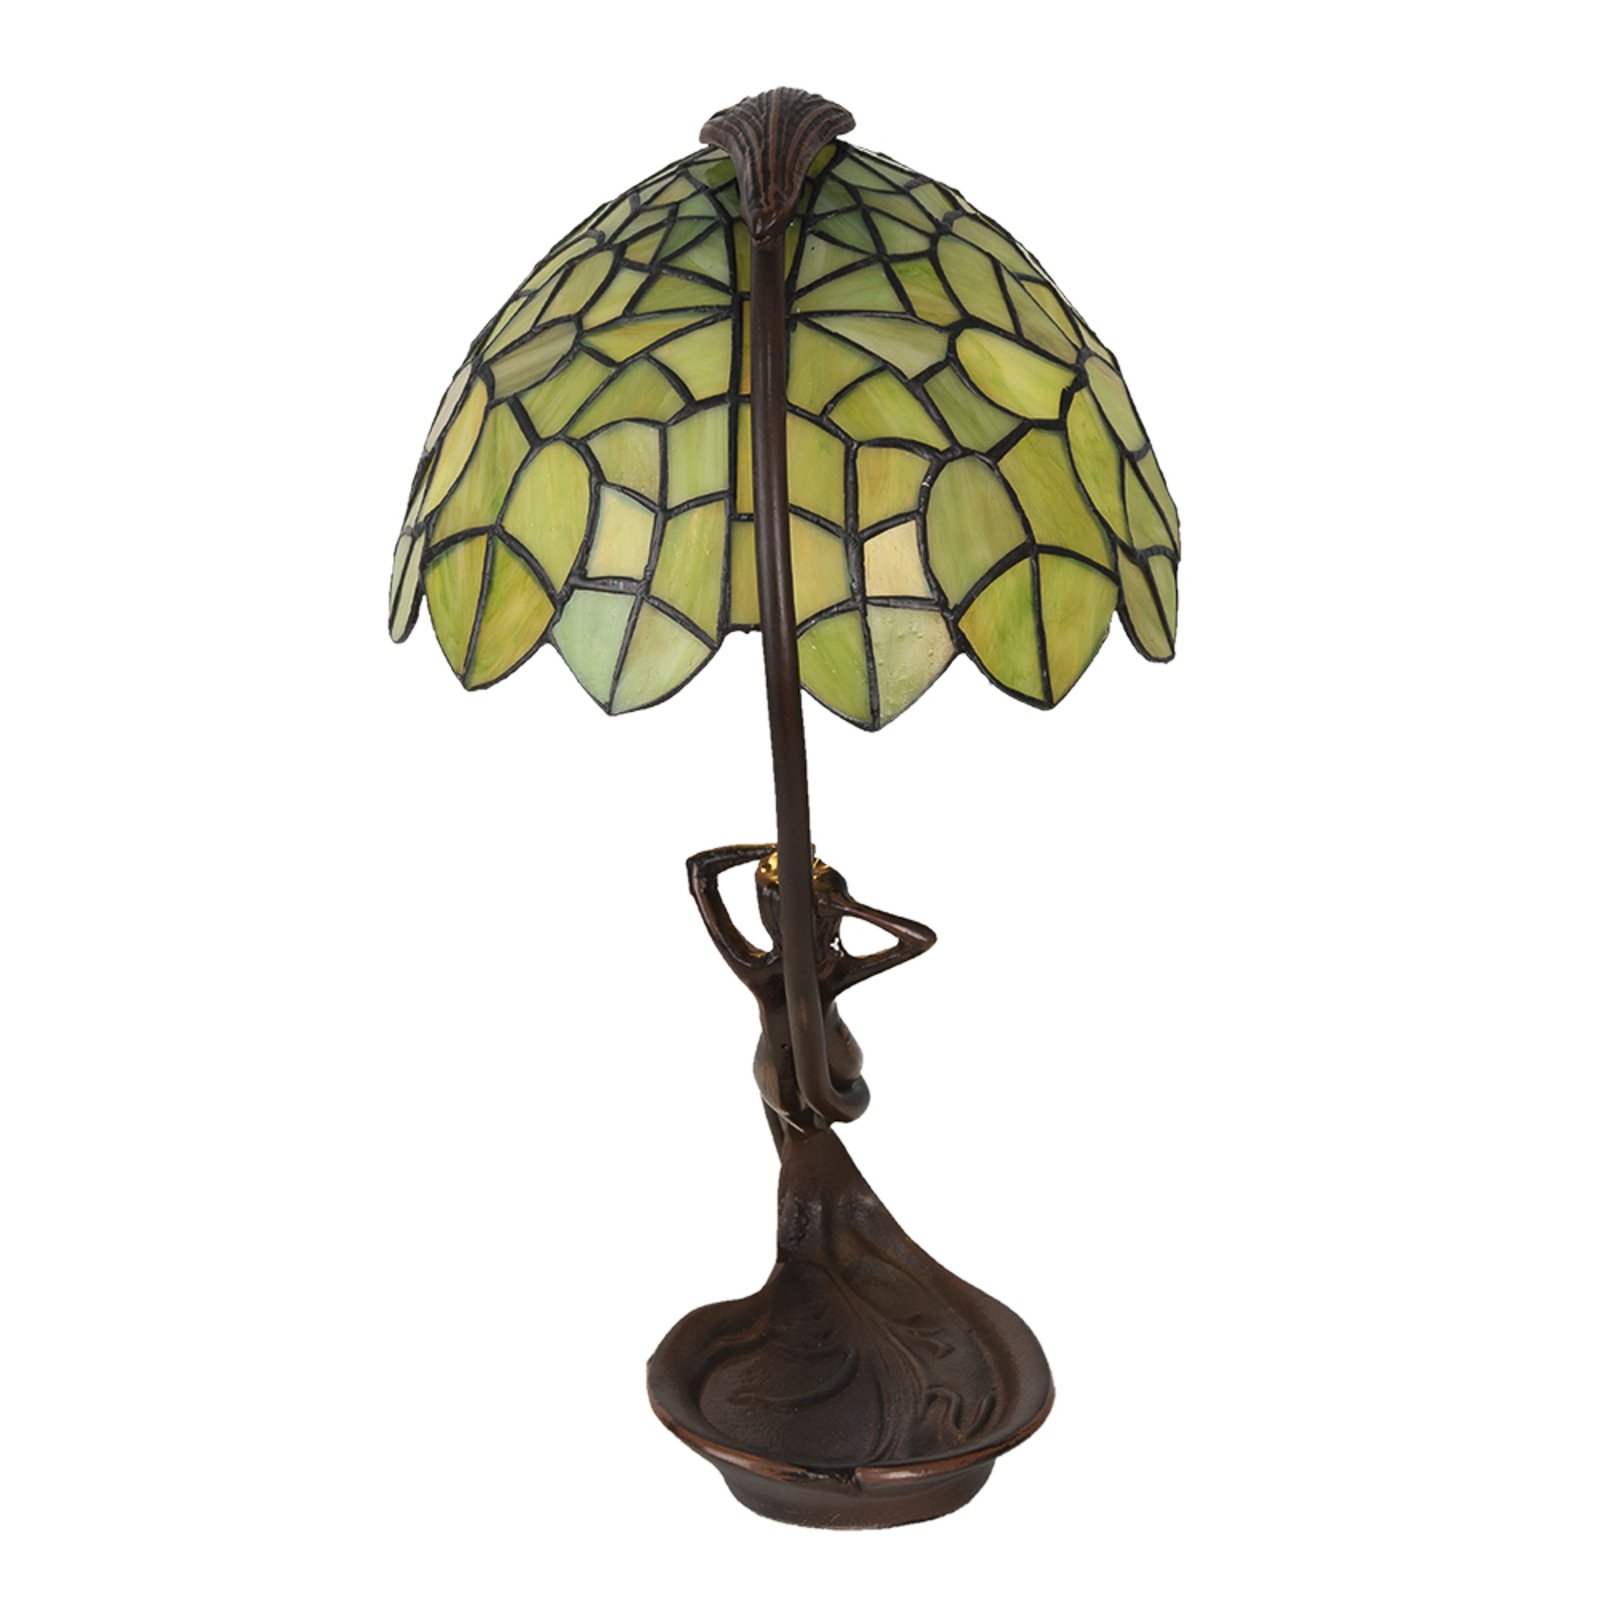 Lampa stołowa 5LL-6098 w stylu Tiffany, zielona